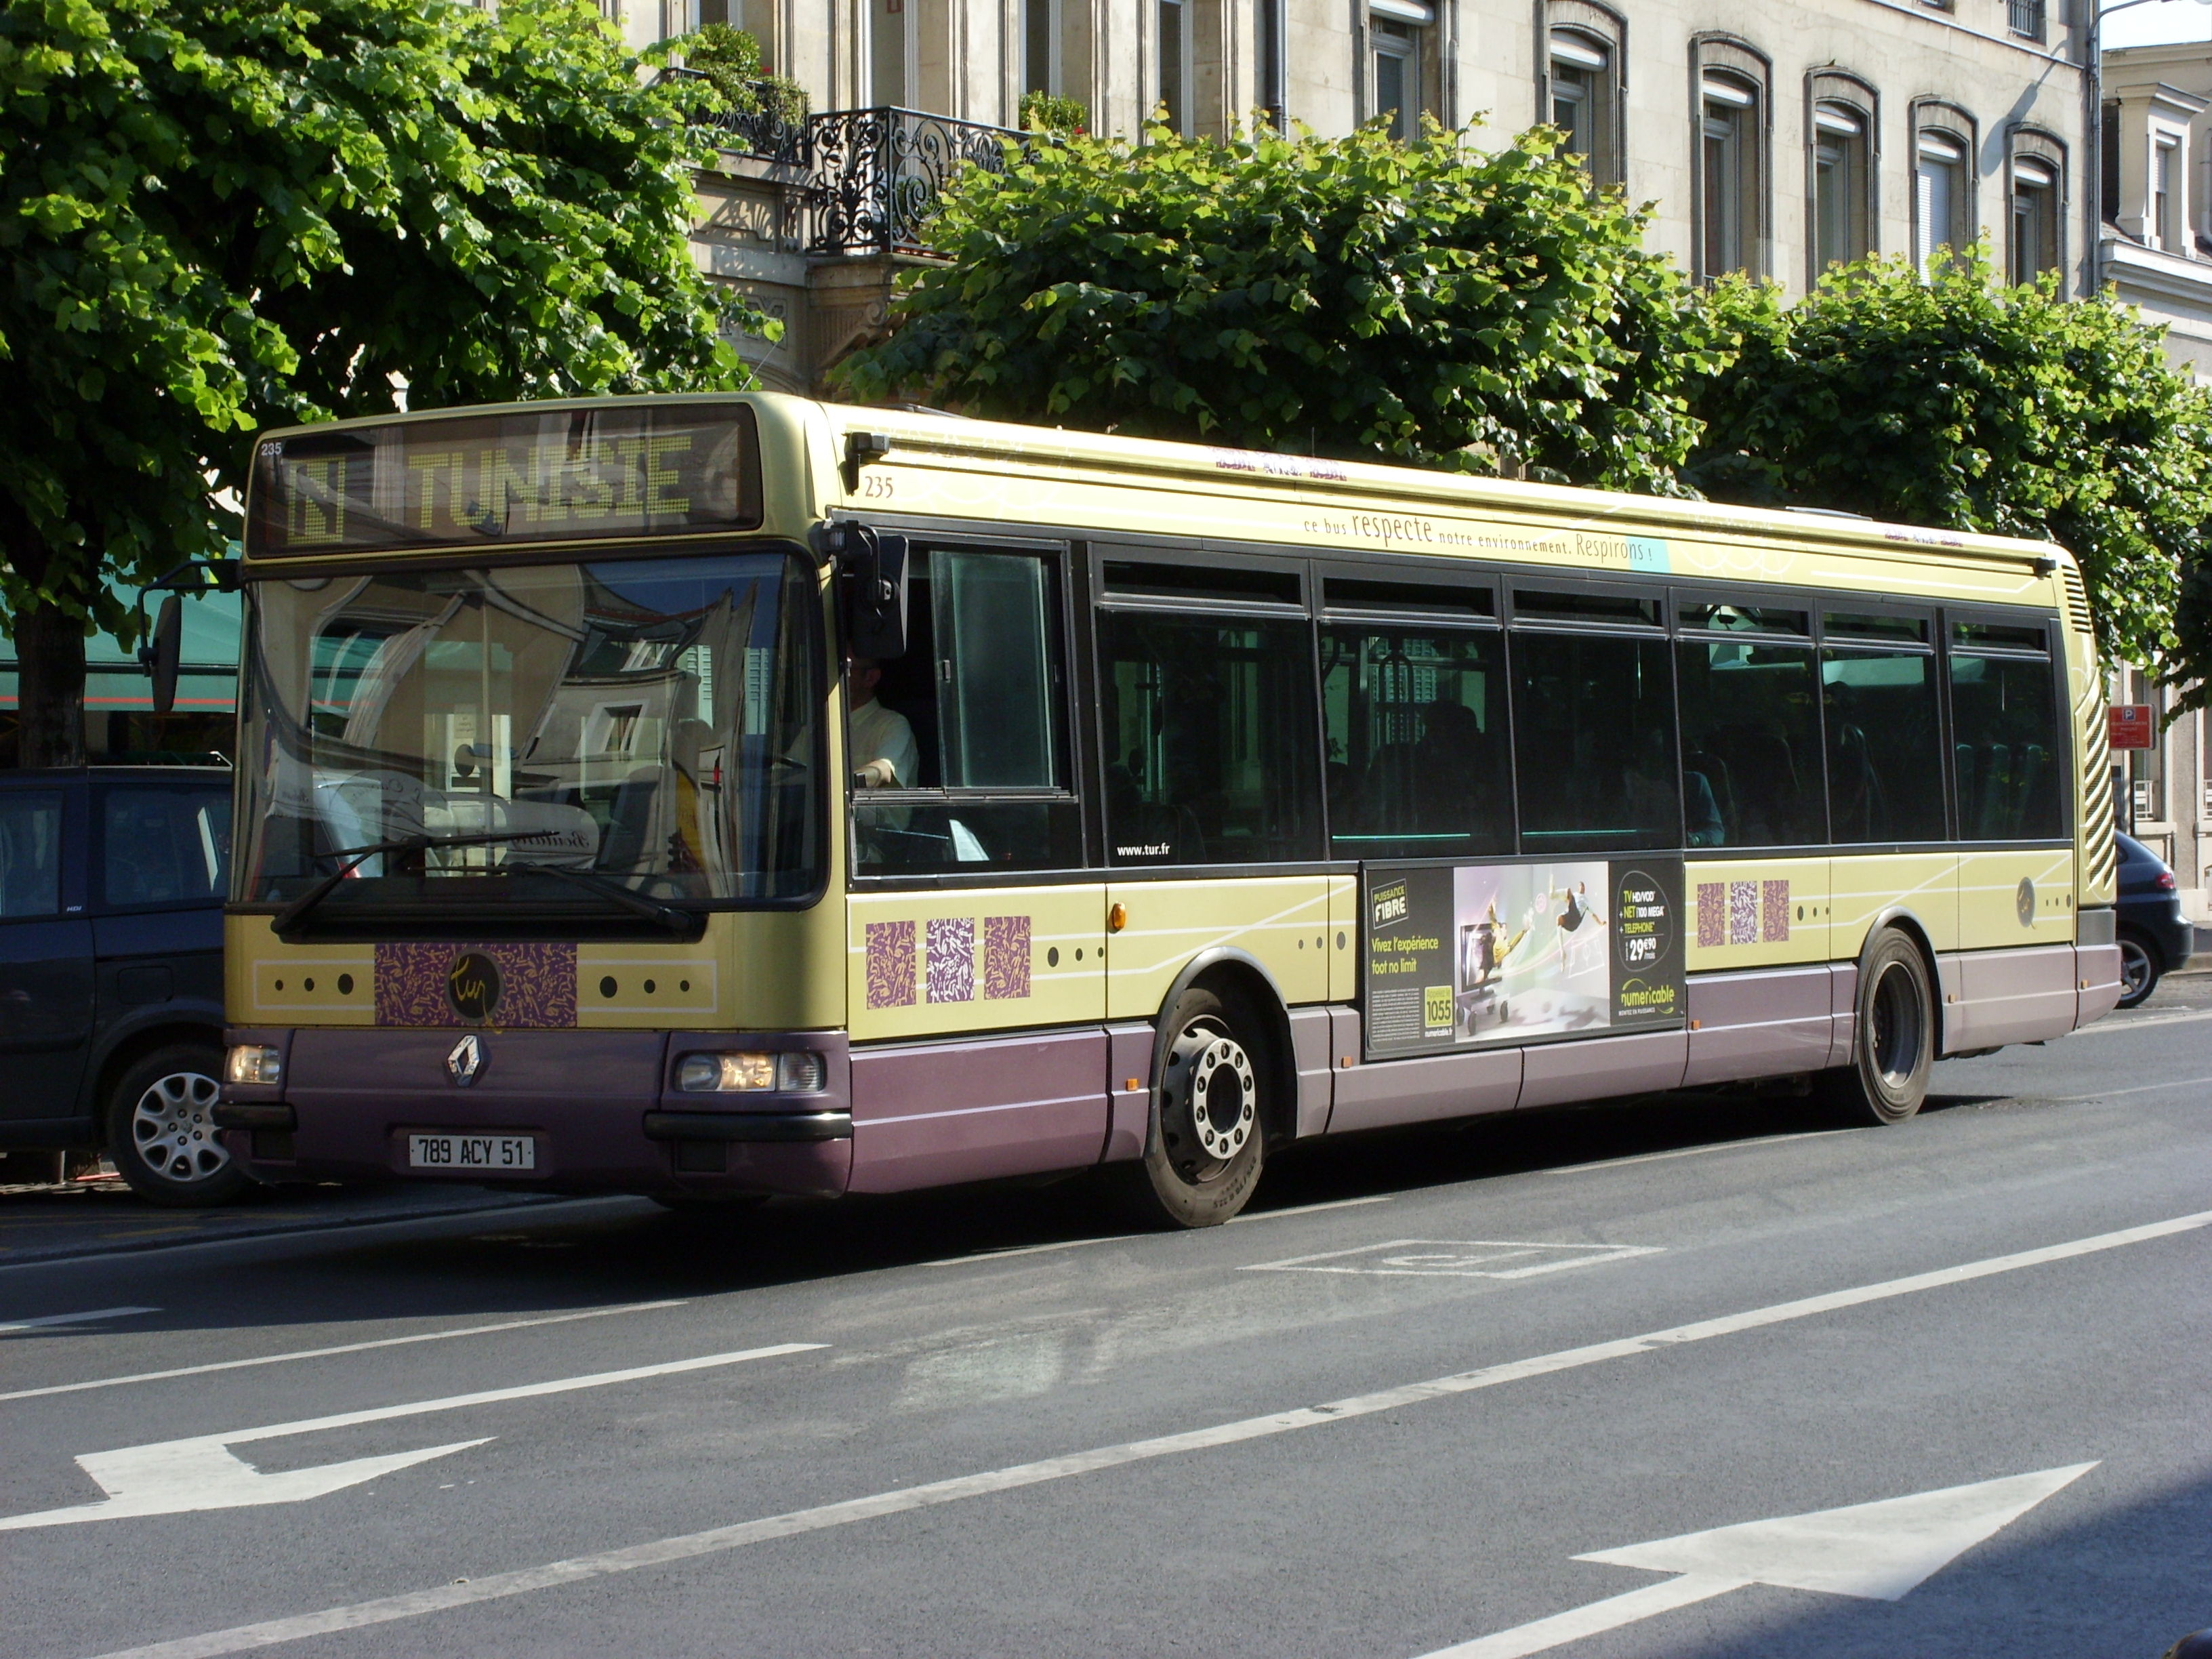 TUR - Irisbus Agora S n°235 - Ligne N, Car, Outdoor, Road, Train, HQ Photo